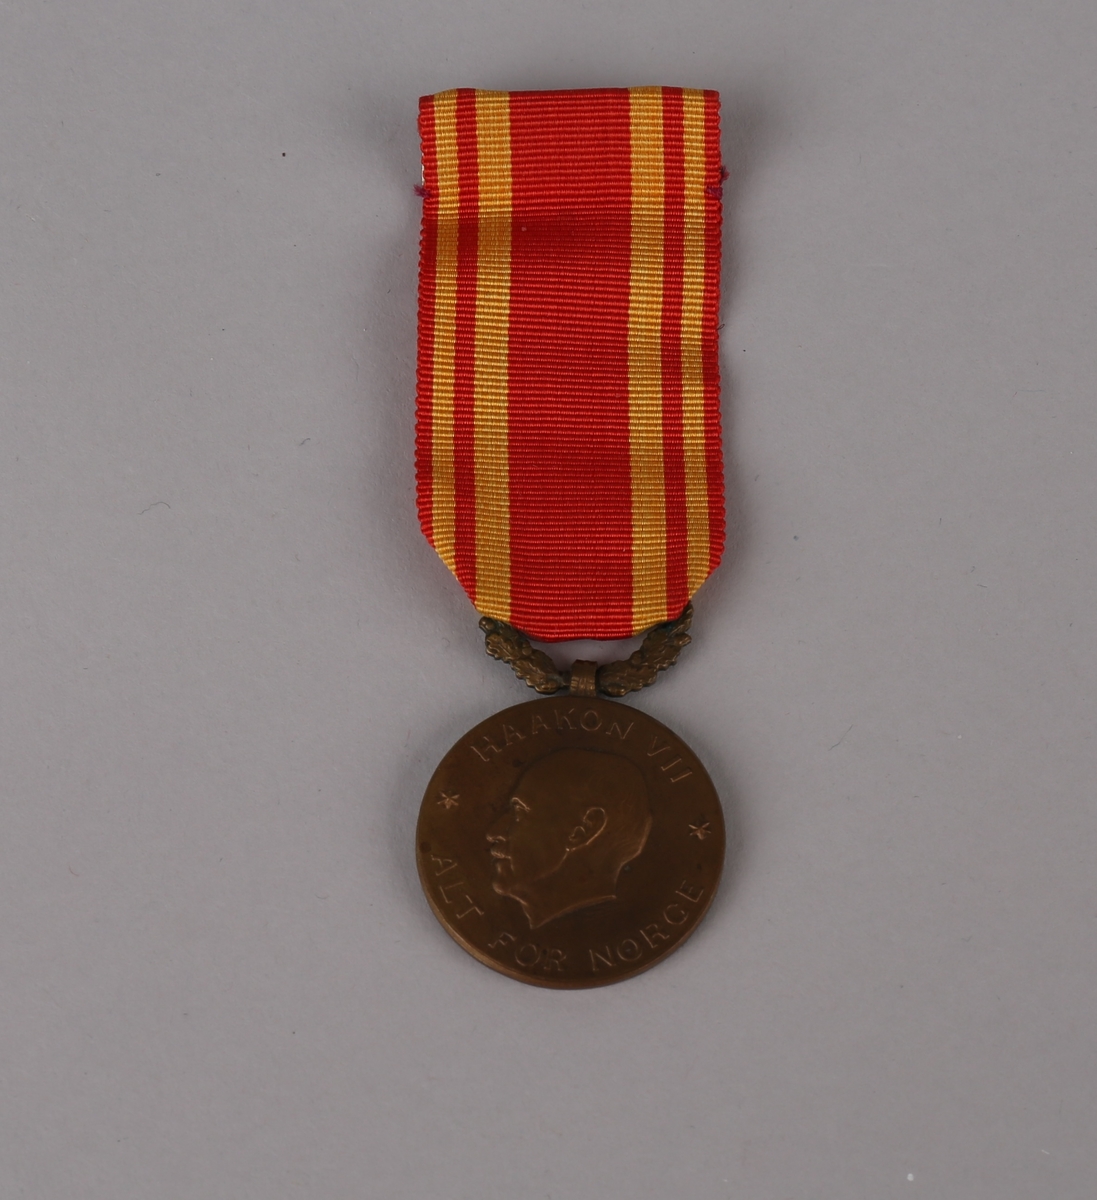 Medalje med relieff av Kong Haakon VII i profil